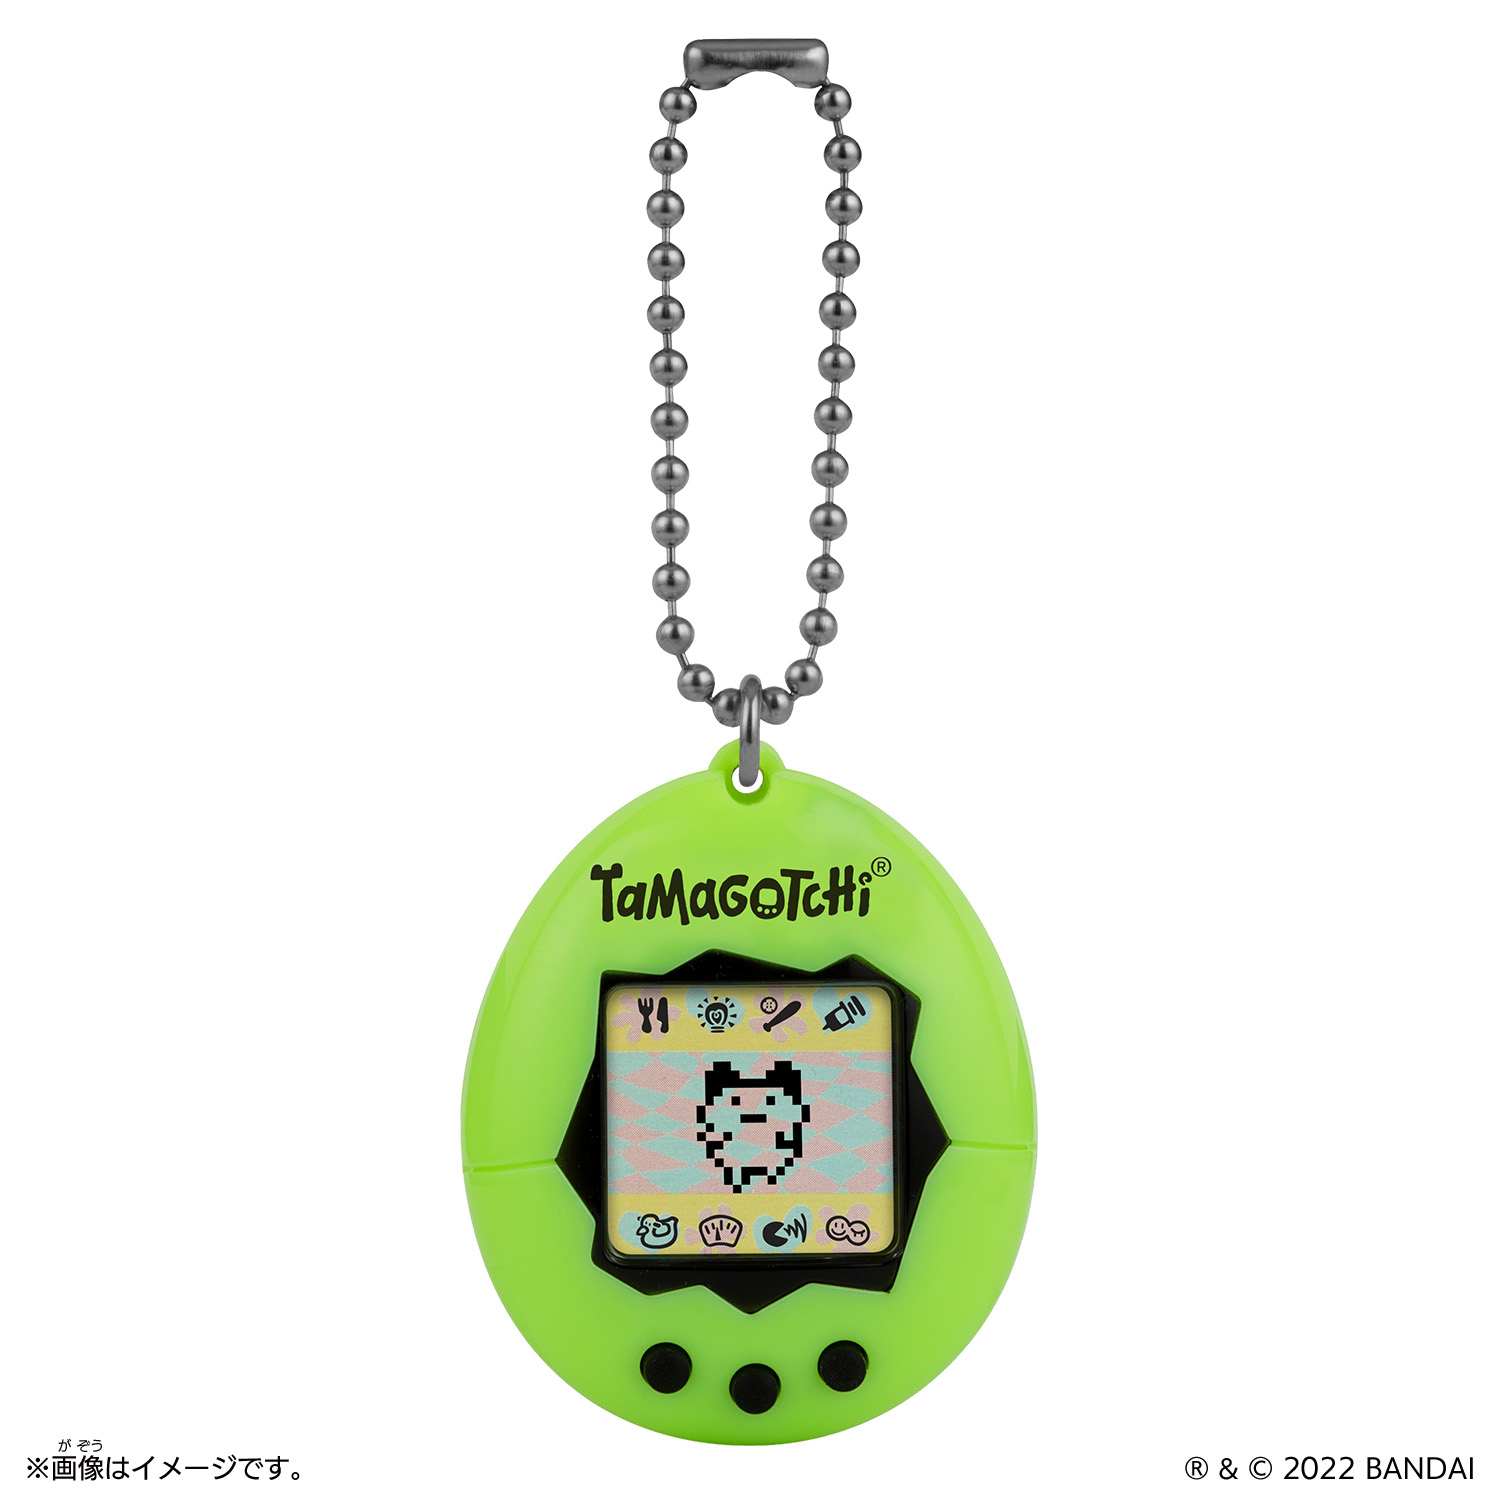 Tamagotchi Neon originale